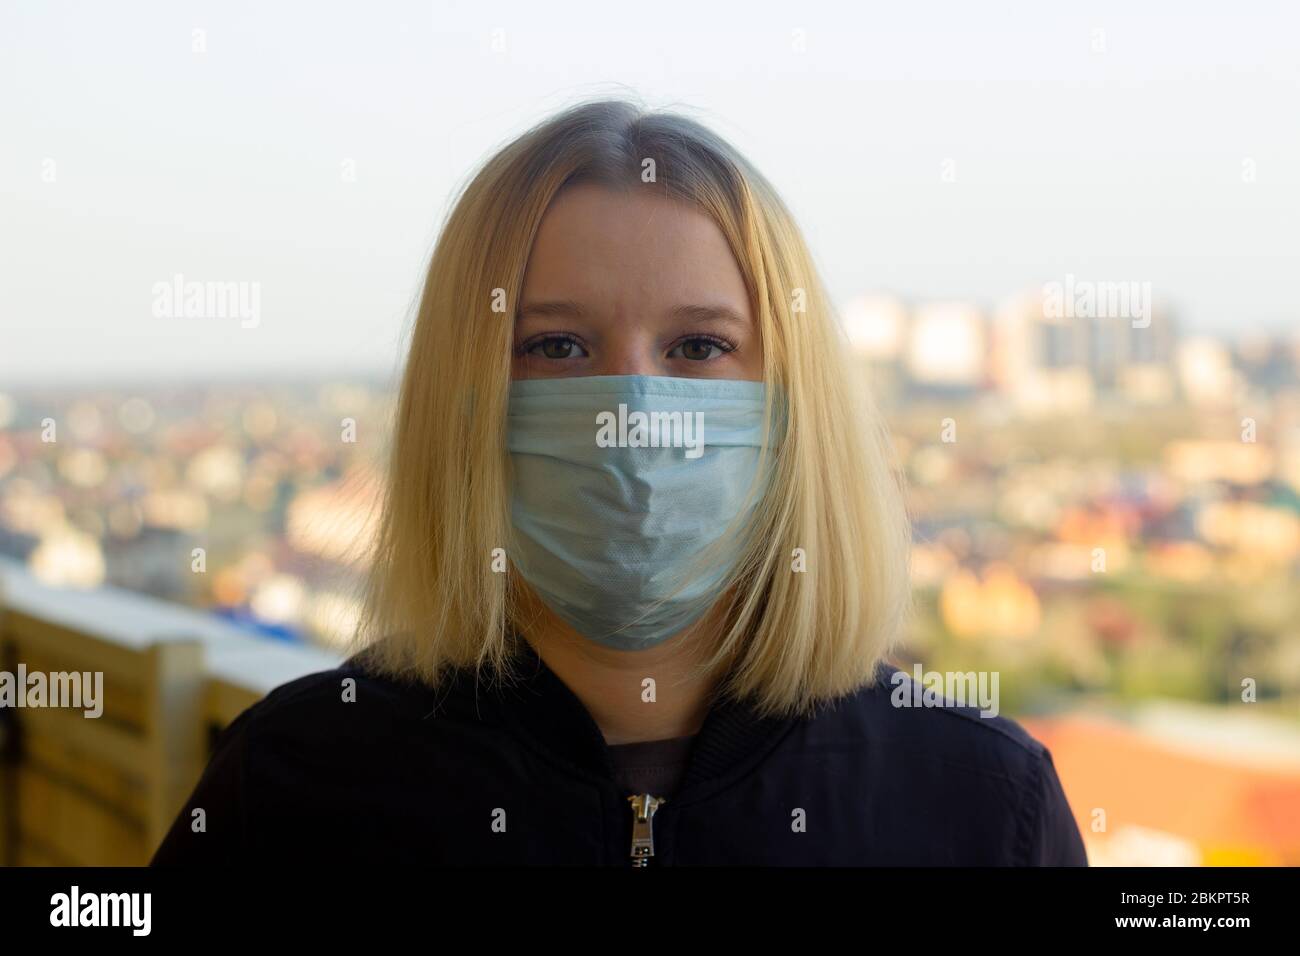 Portrait de jeune femme avec masque médical, fond de ville flou. Concept covid-19 prévention pandémie mondiale de coronavirus Banque D'Images